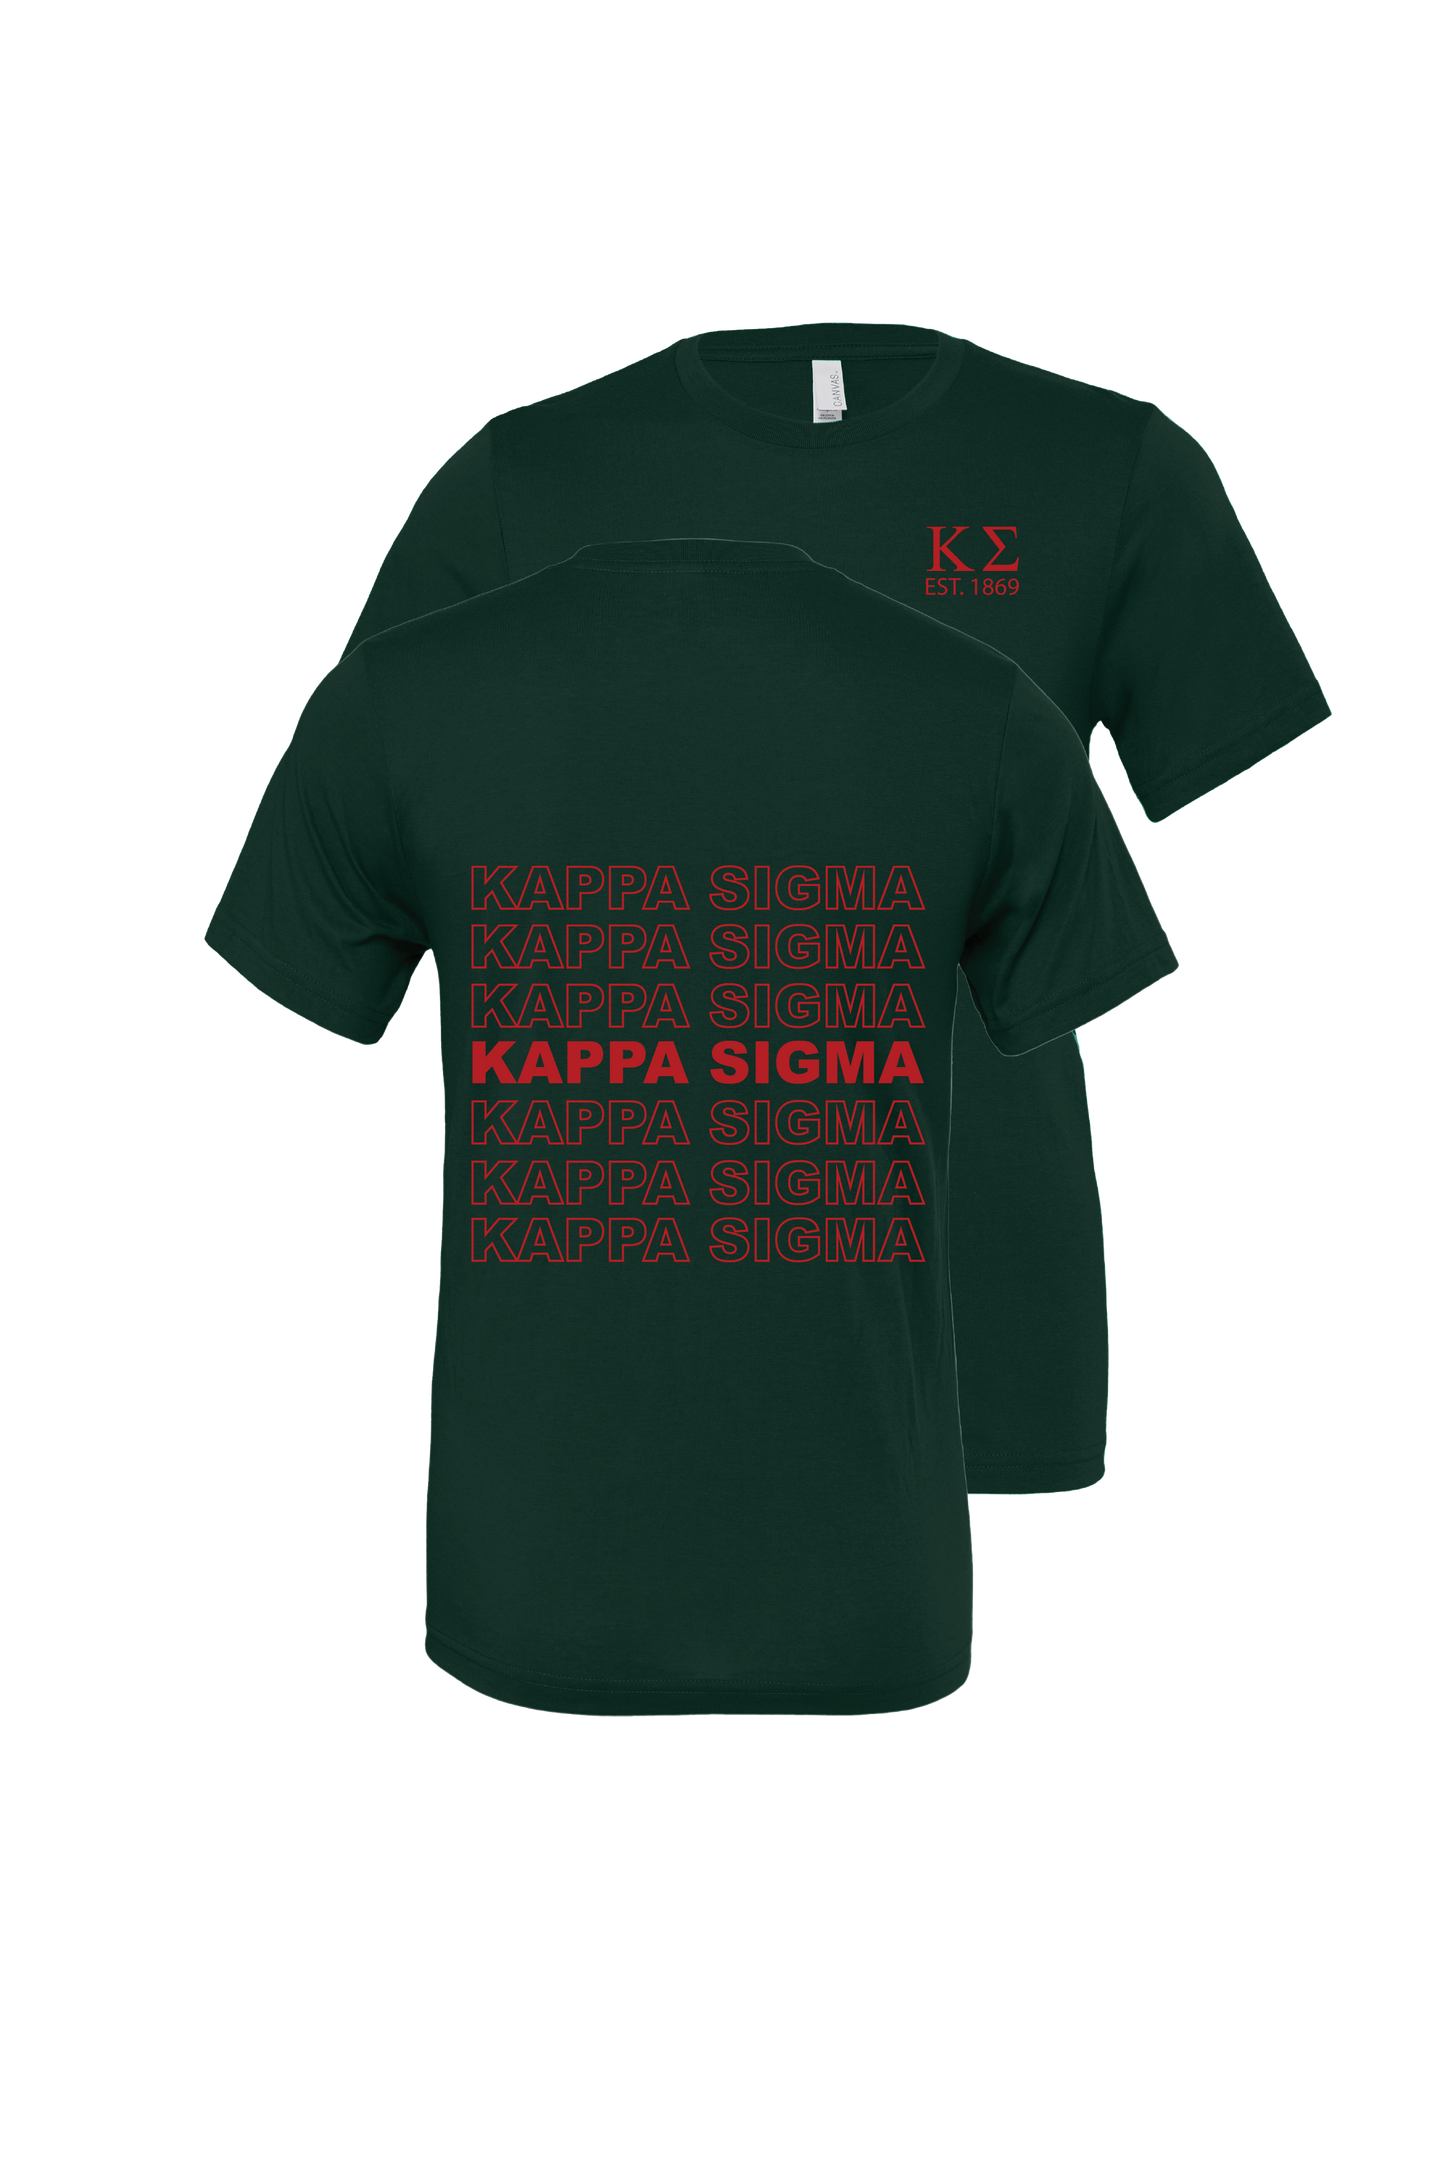 Kappa Sigma Repeating Name Short Sleeve T-Shirts